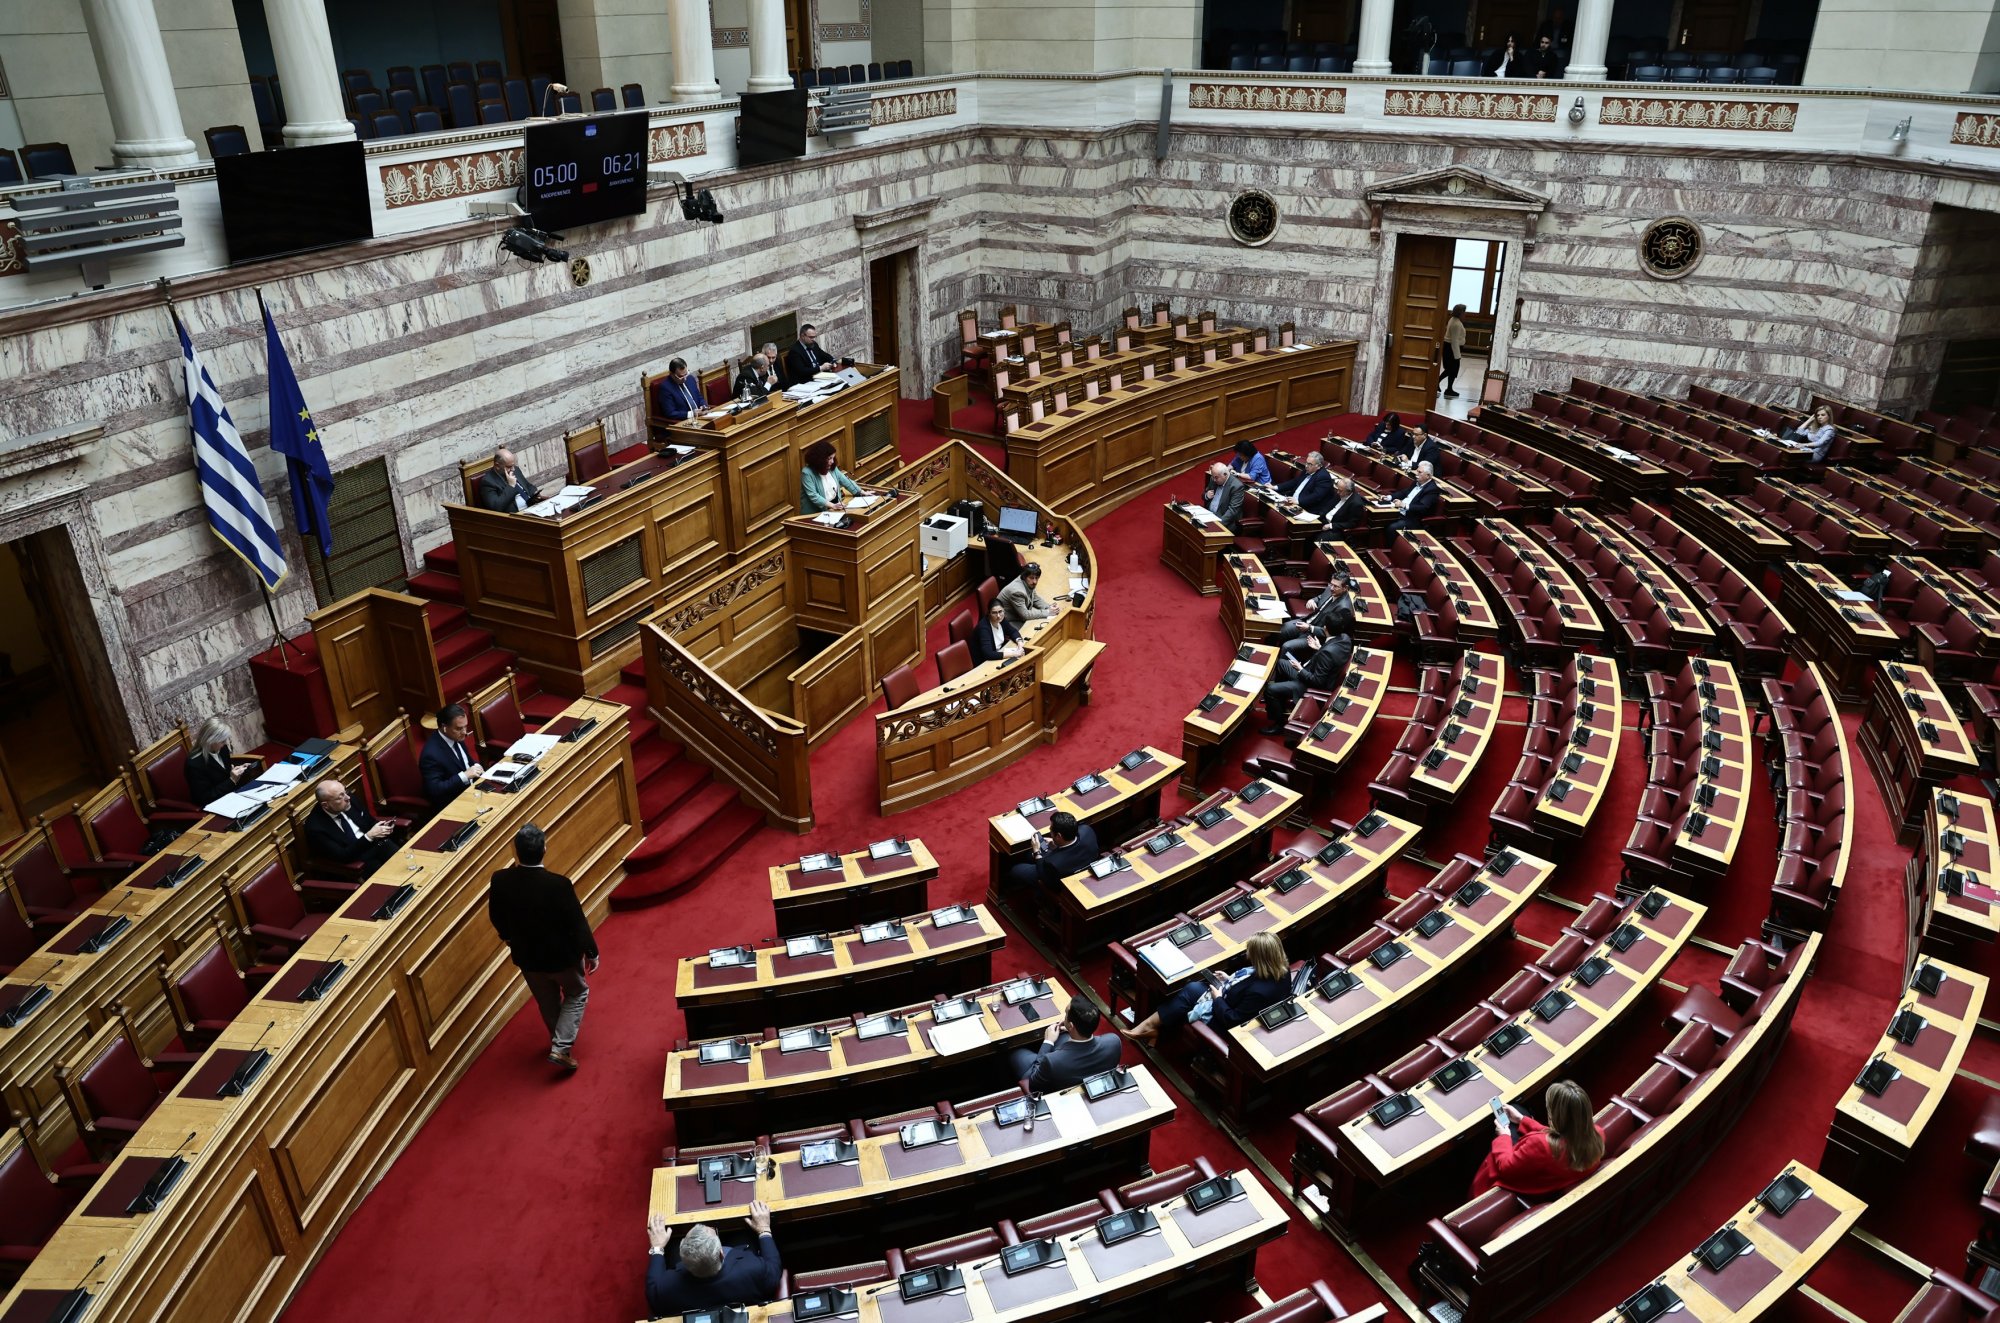 Σε αντιπολιτευτικό μέτωπο για κατάθεση πρότασης δυσπιστίας καλεί ο Ανδρουλάκης - Στηρίζει η Νέα Αριστερά